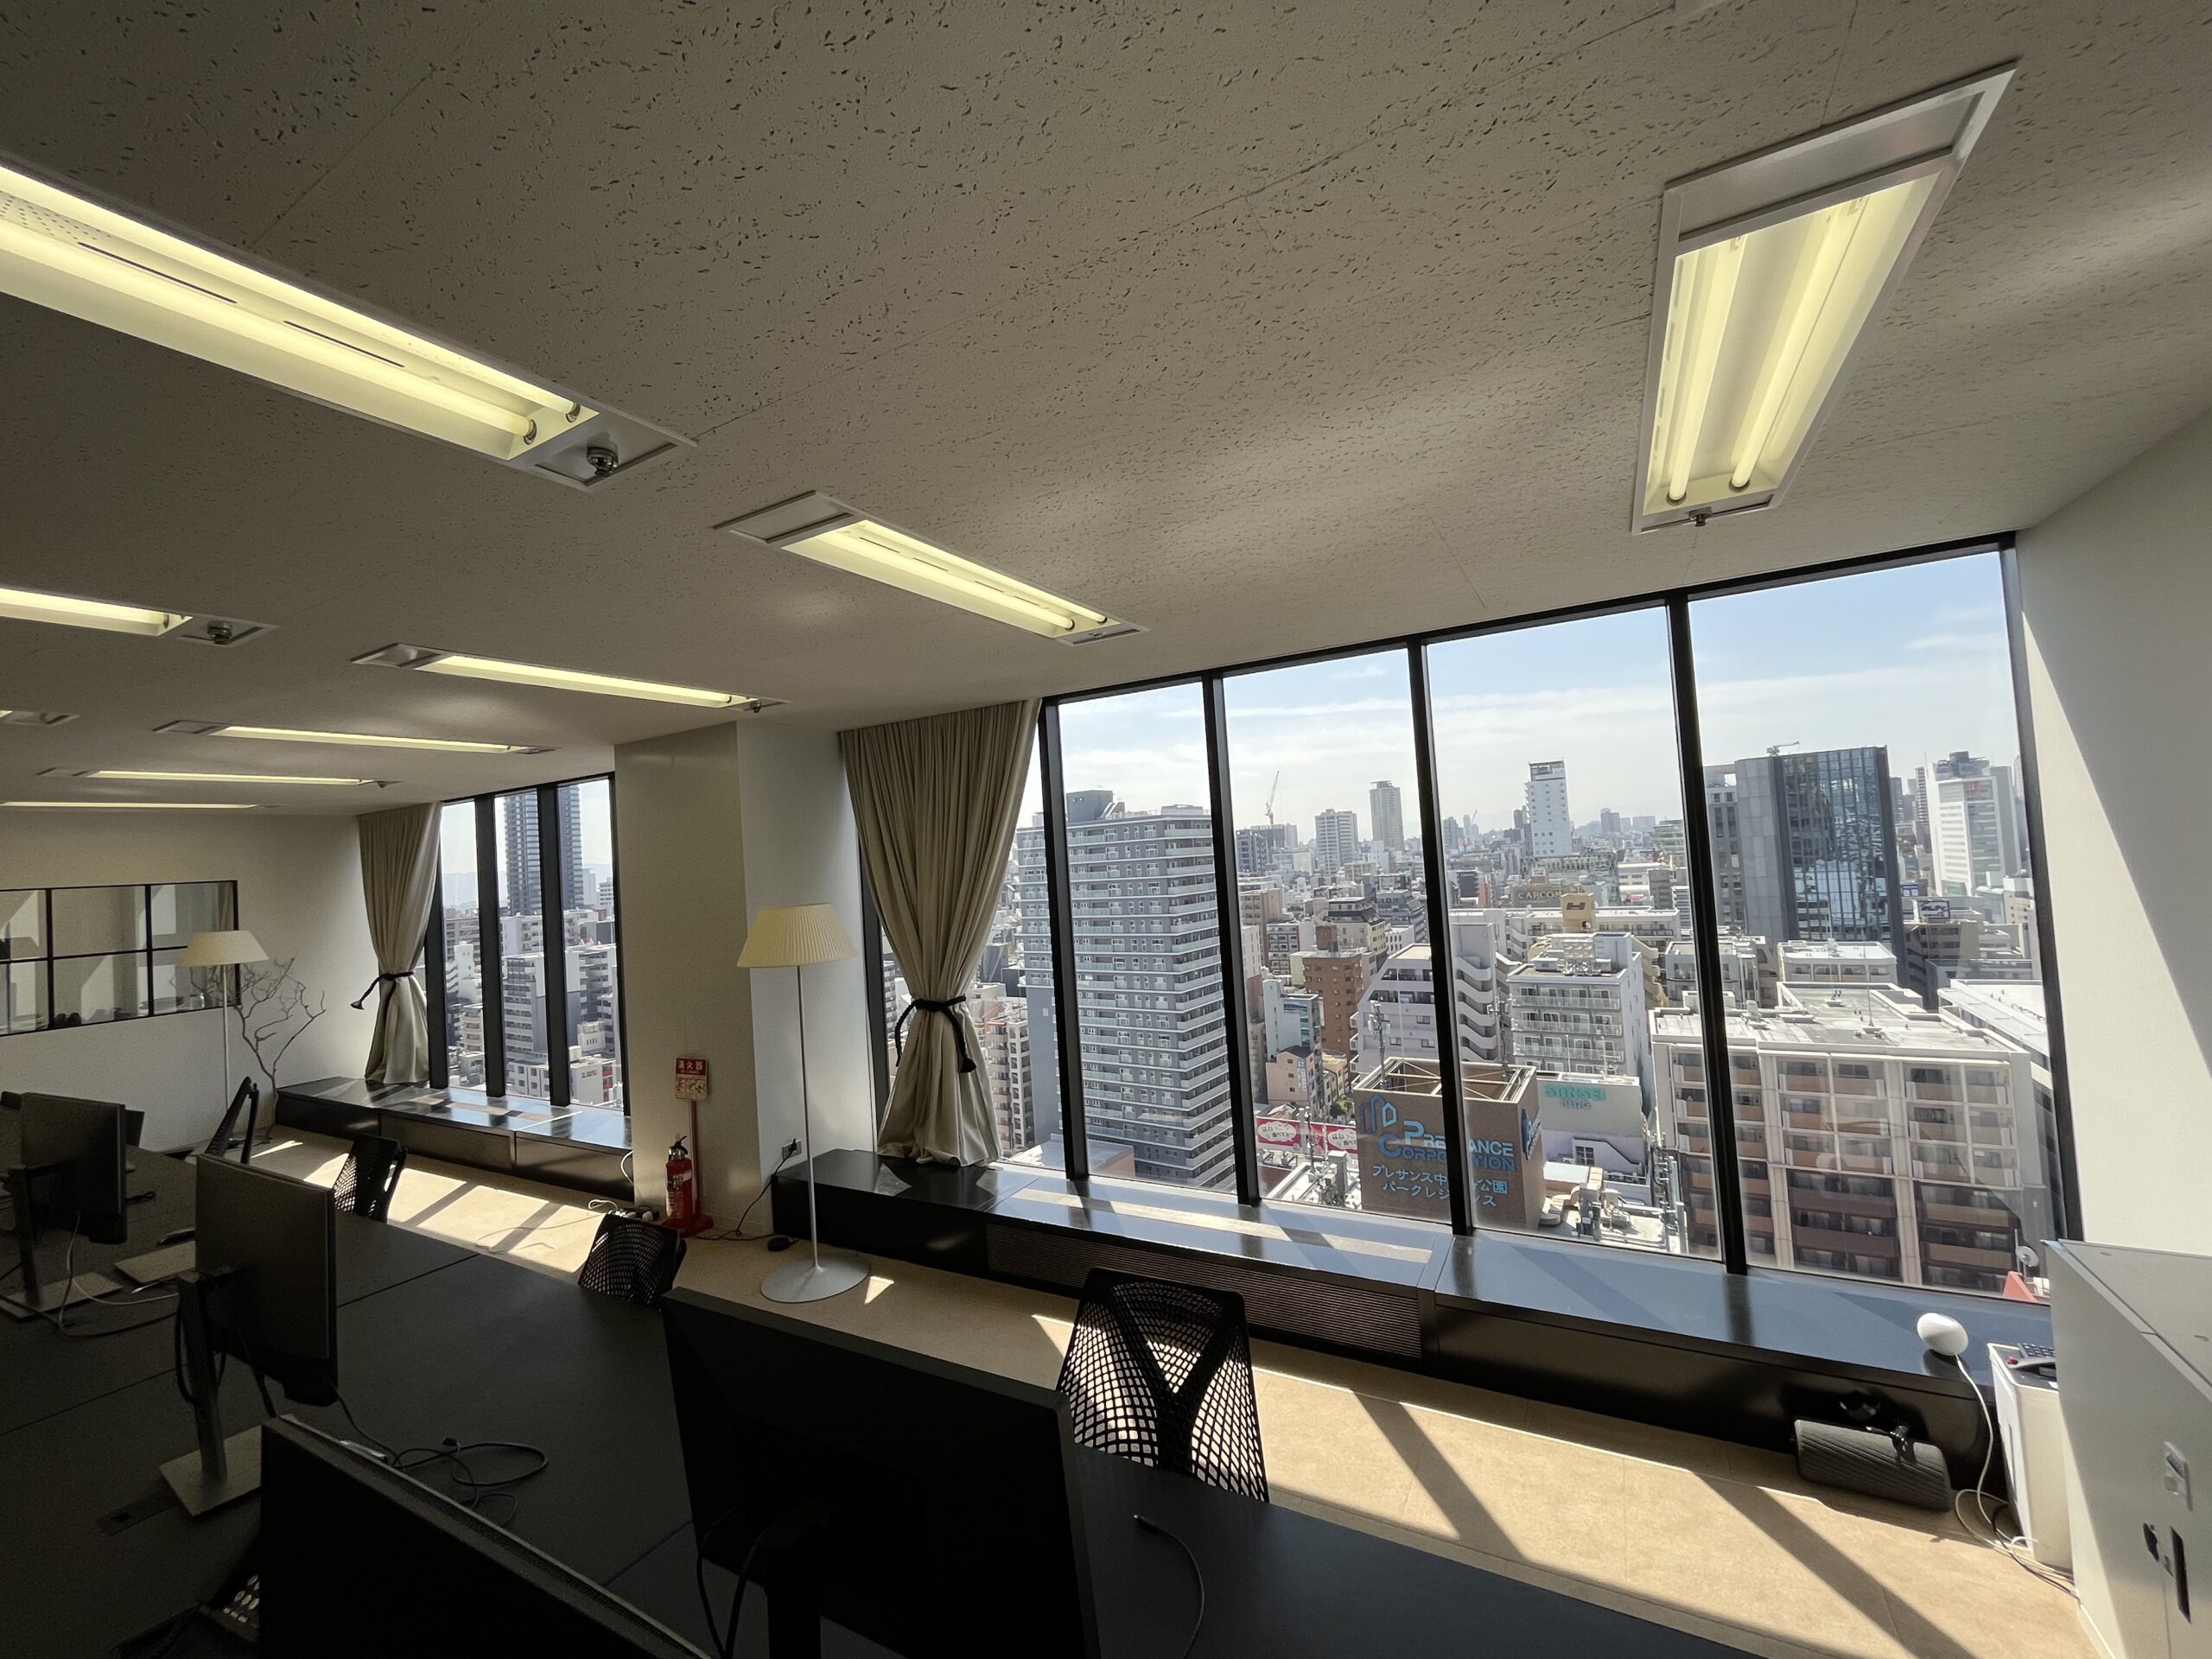 【居抜き】大阪市中央区北浜にある、白を基調とした開放感のあるオシャレなオフィス